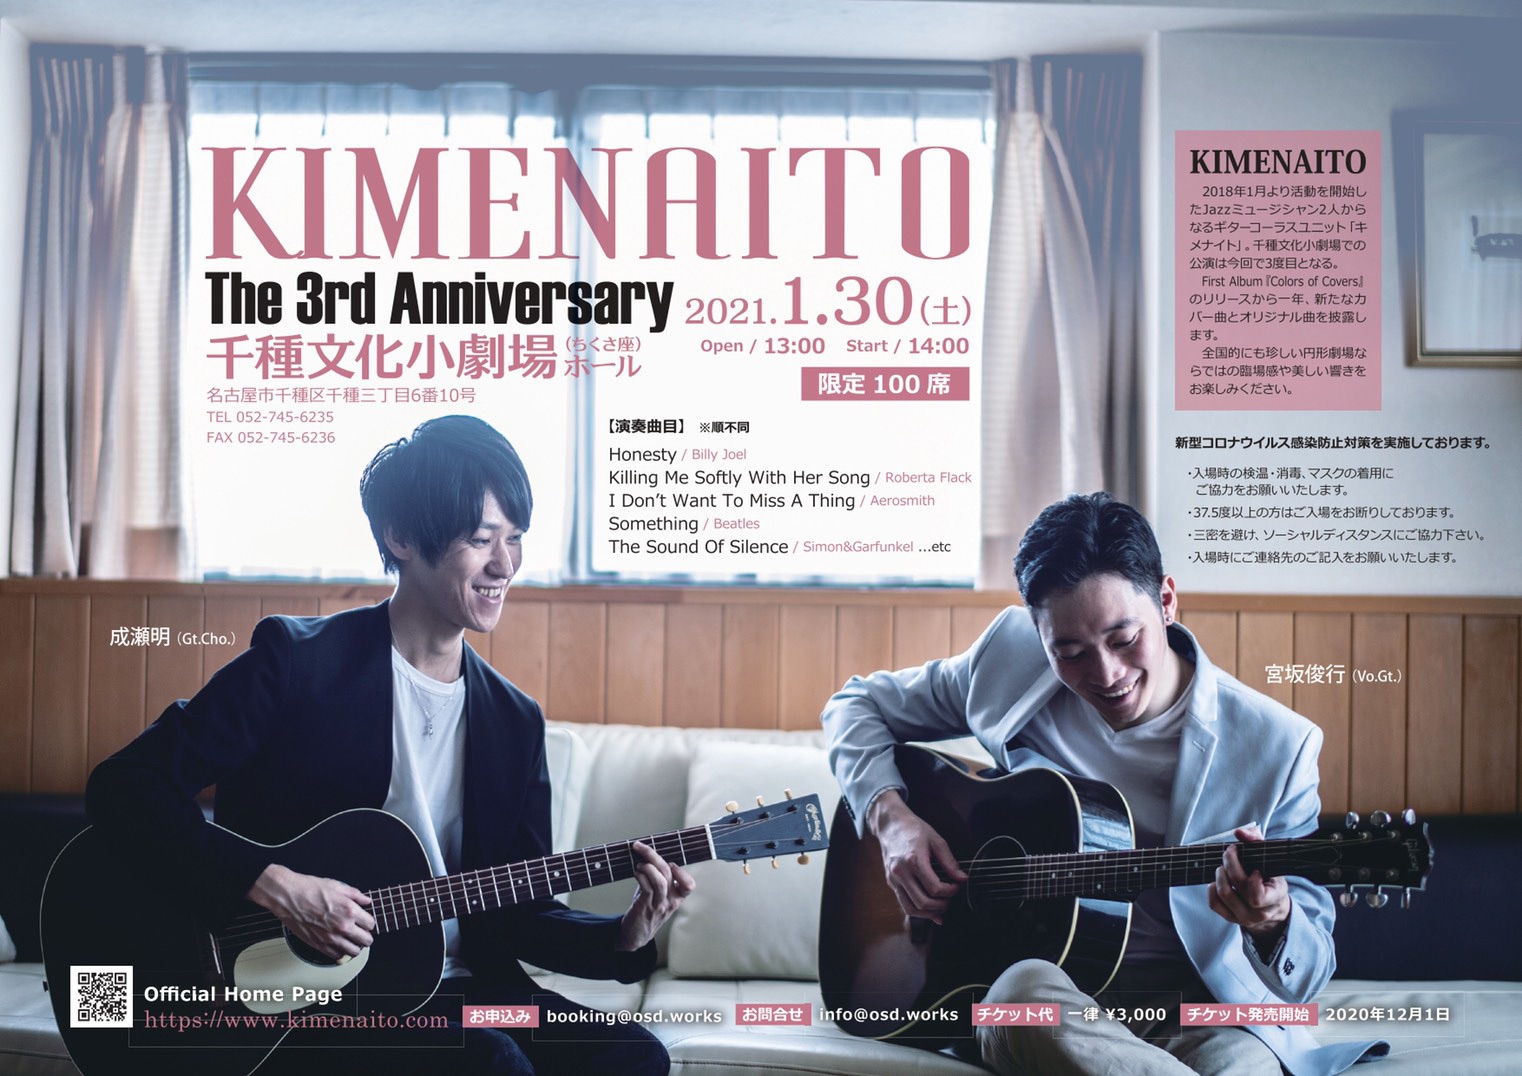 1月30日 土 千種座コンサート Acoustic Duo キメナイト Official Web Site